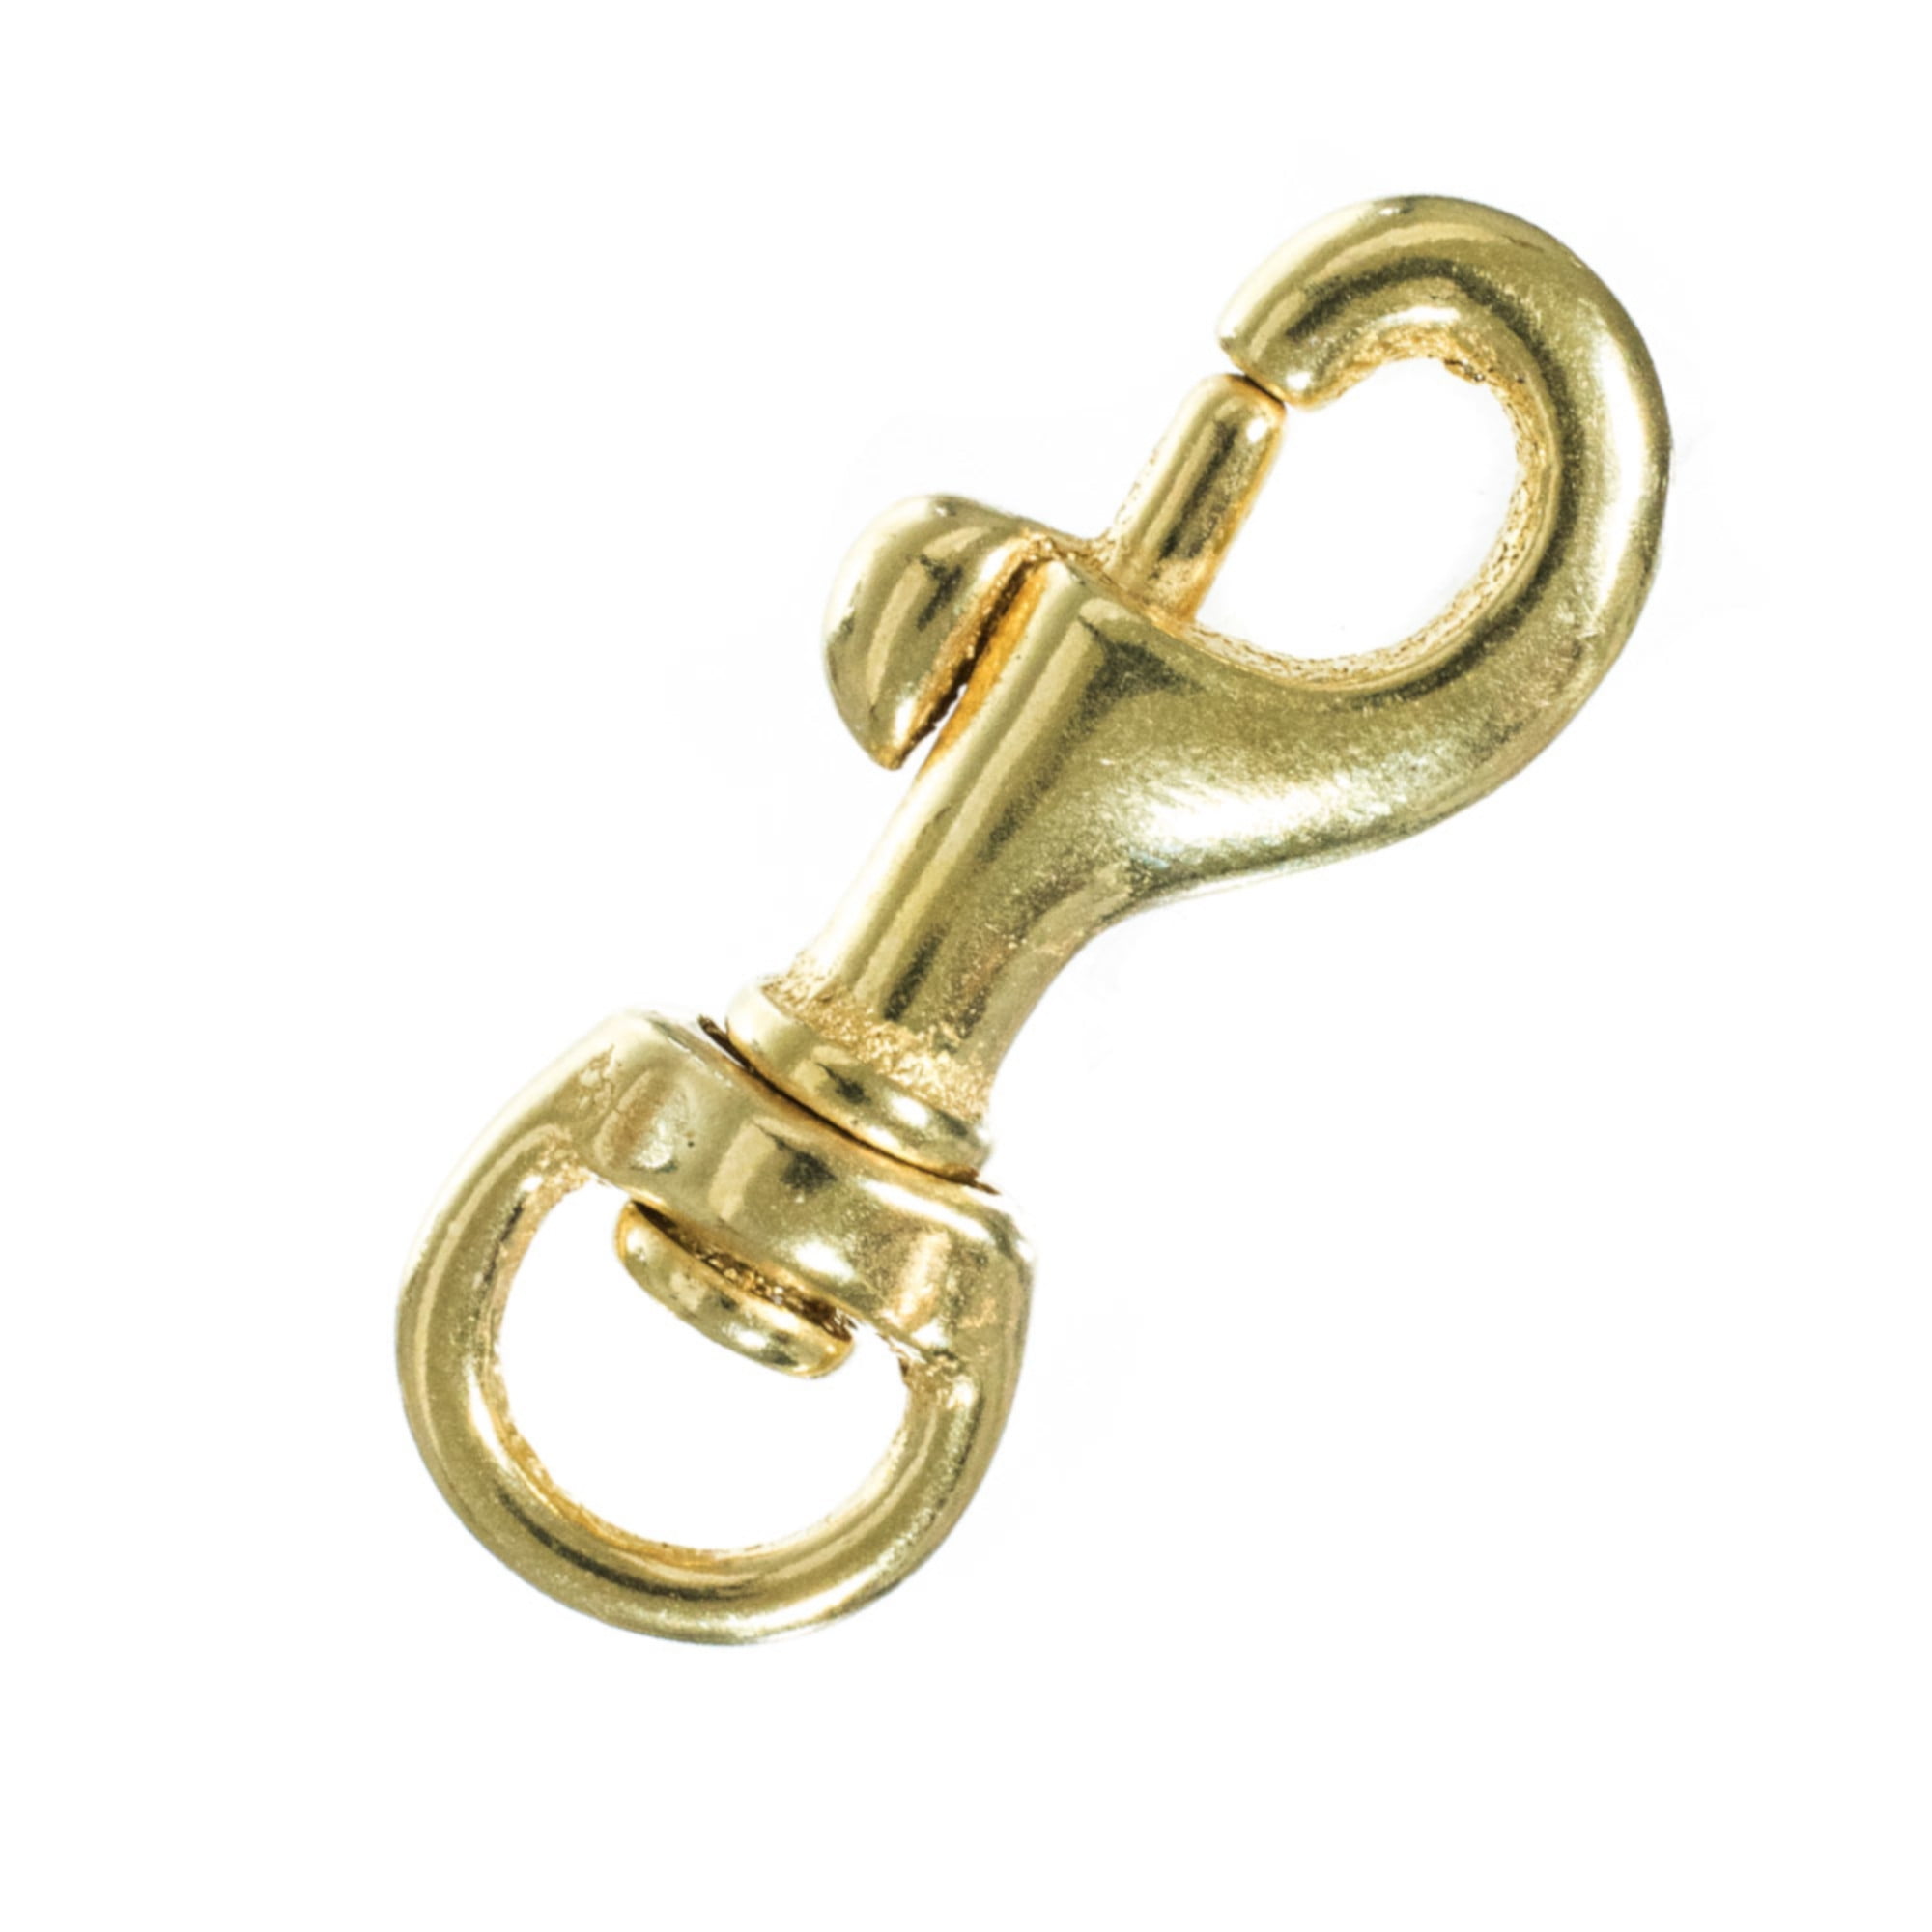 Brass Swivel Snap Hooks - 1/4, 3/8, 1/2, 3/4 Sizes - Multiple Pack Sizes